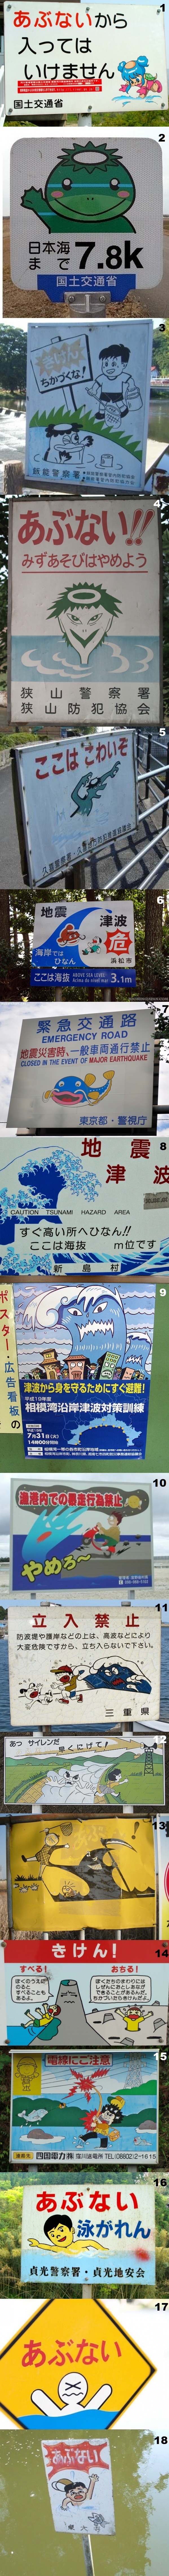 N-water-danger-japanese-warnings